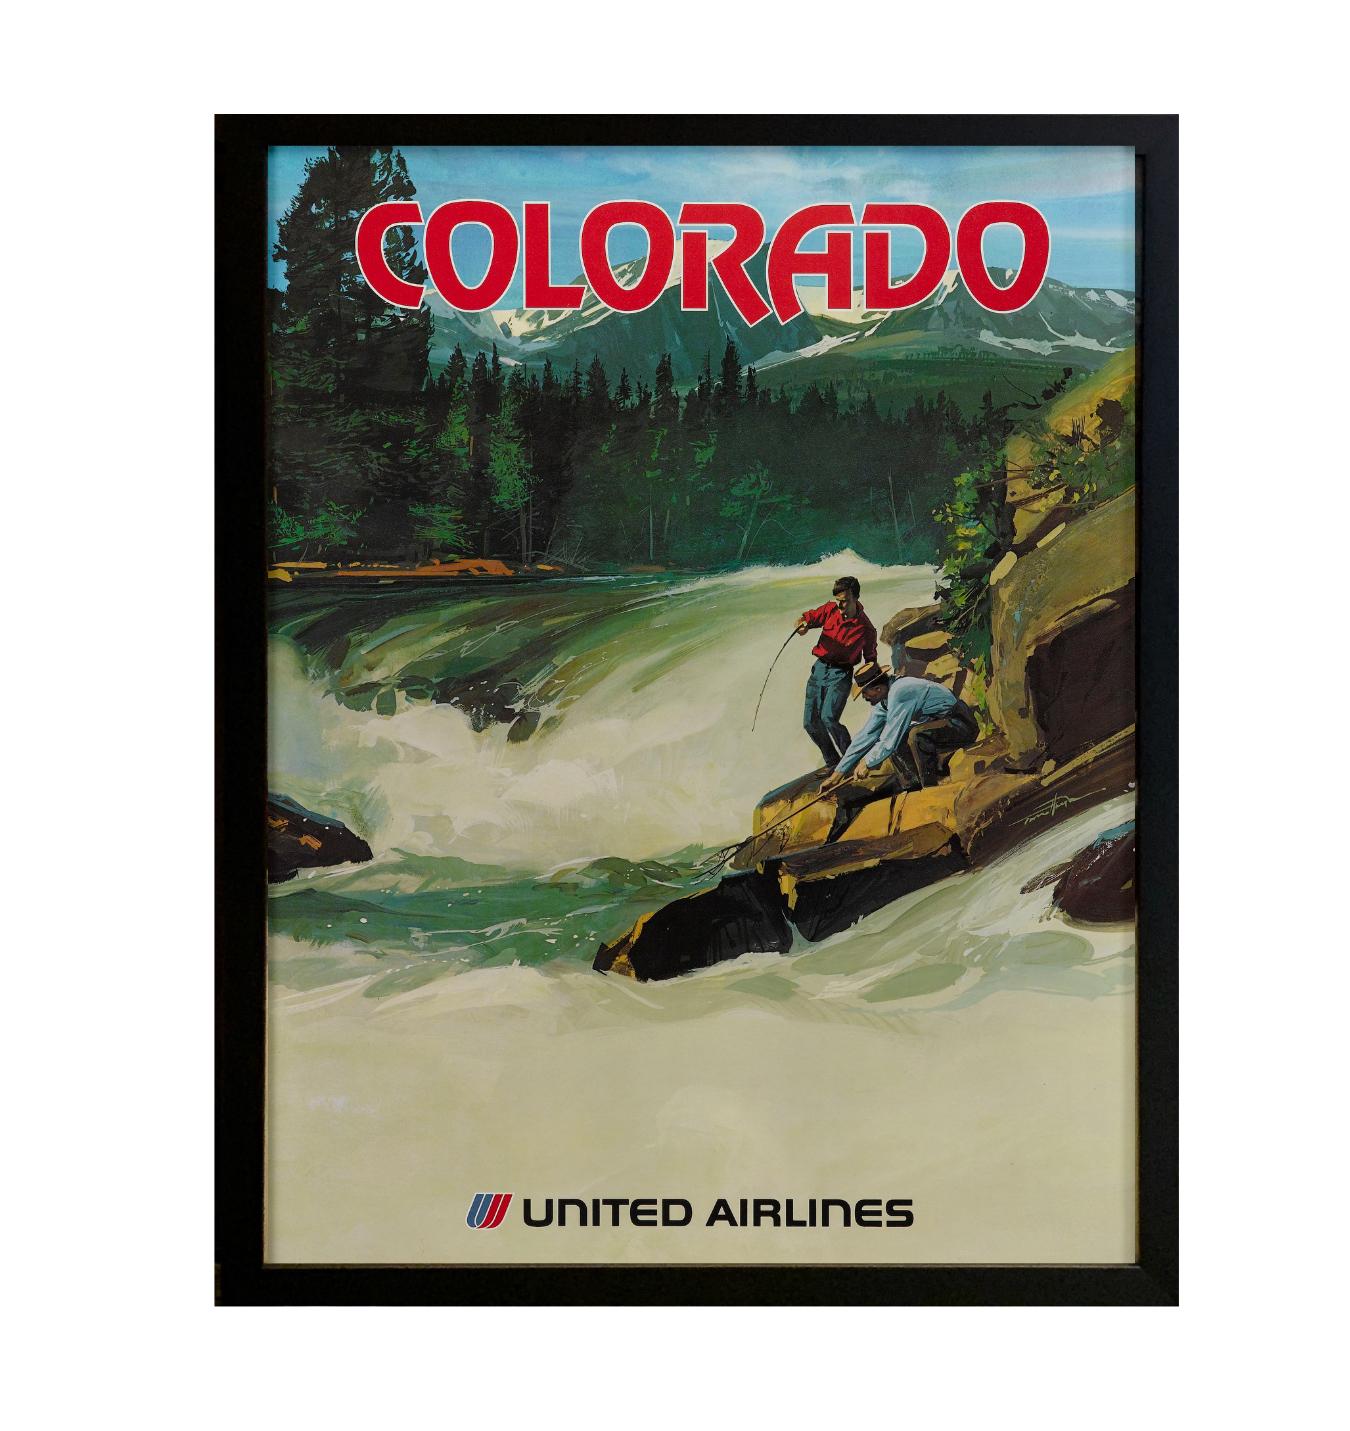 Nous vous proposons une affiche de voyage vintage pour United Airlines datant des années 1970. Cette affiche publicitaire présente le Colorado comme l'une des destinations de voyage séduisantes de United Airlines. Le dessin représente deux hommes